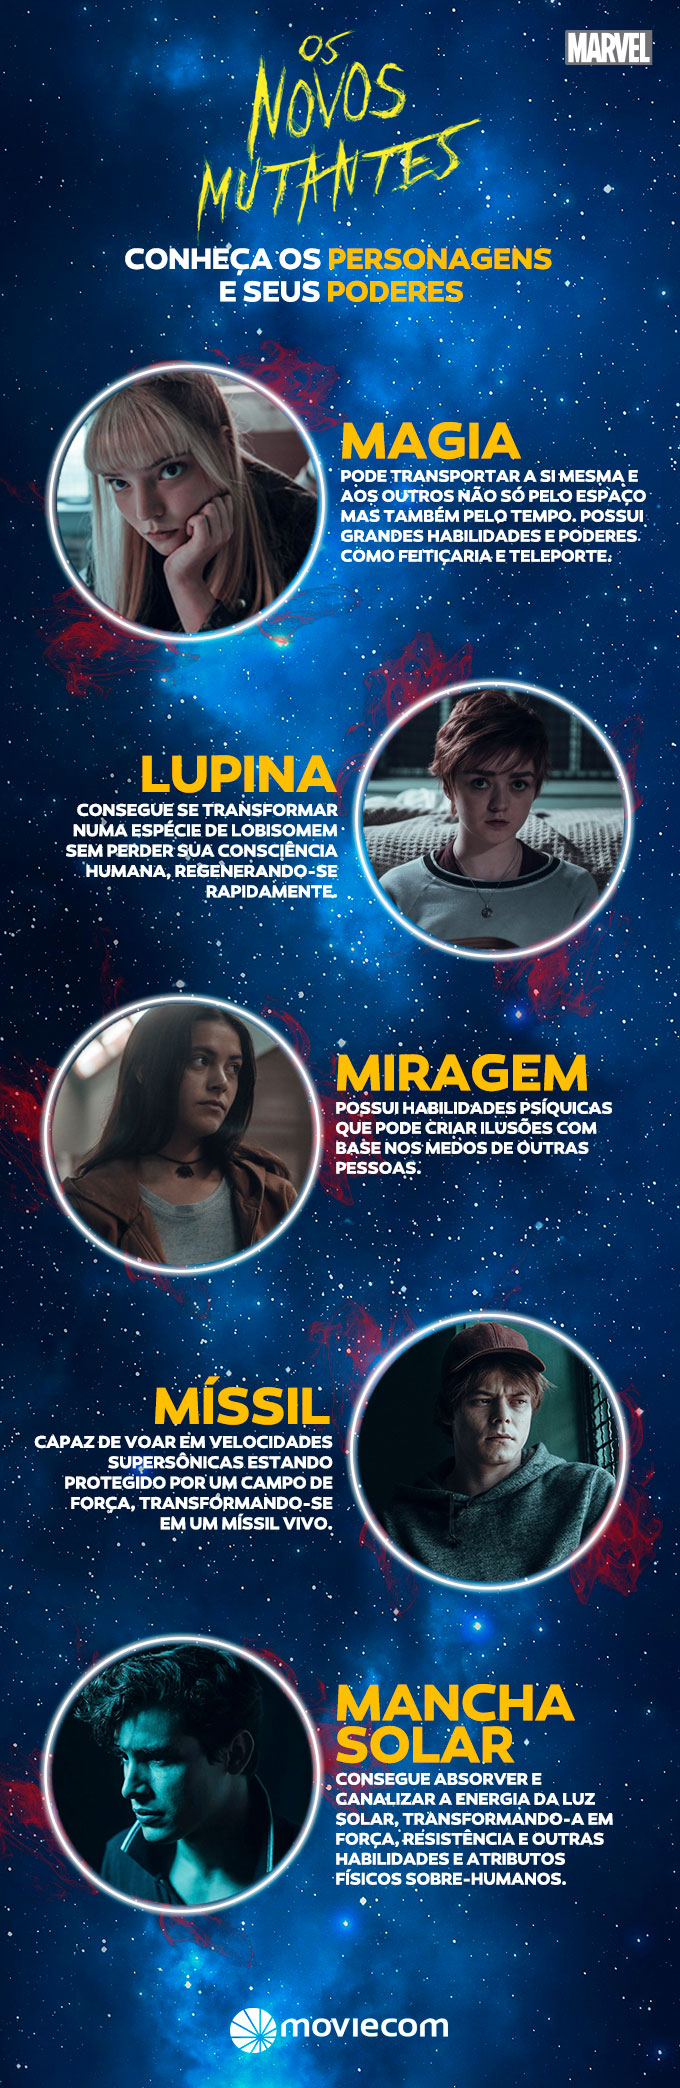 Moviecom Viva O Cinema InfogrÁfico Conheça Os Personagens De “os